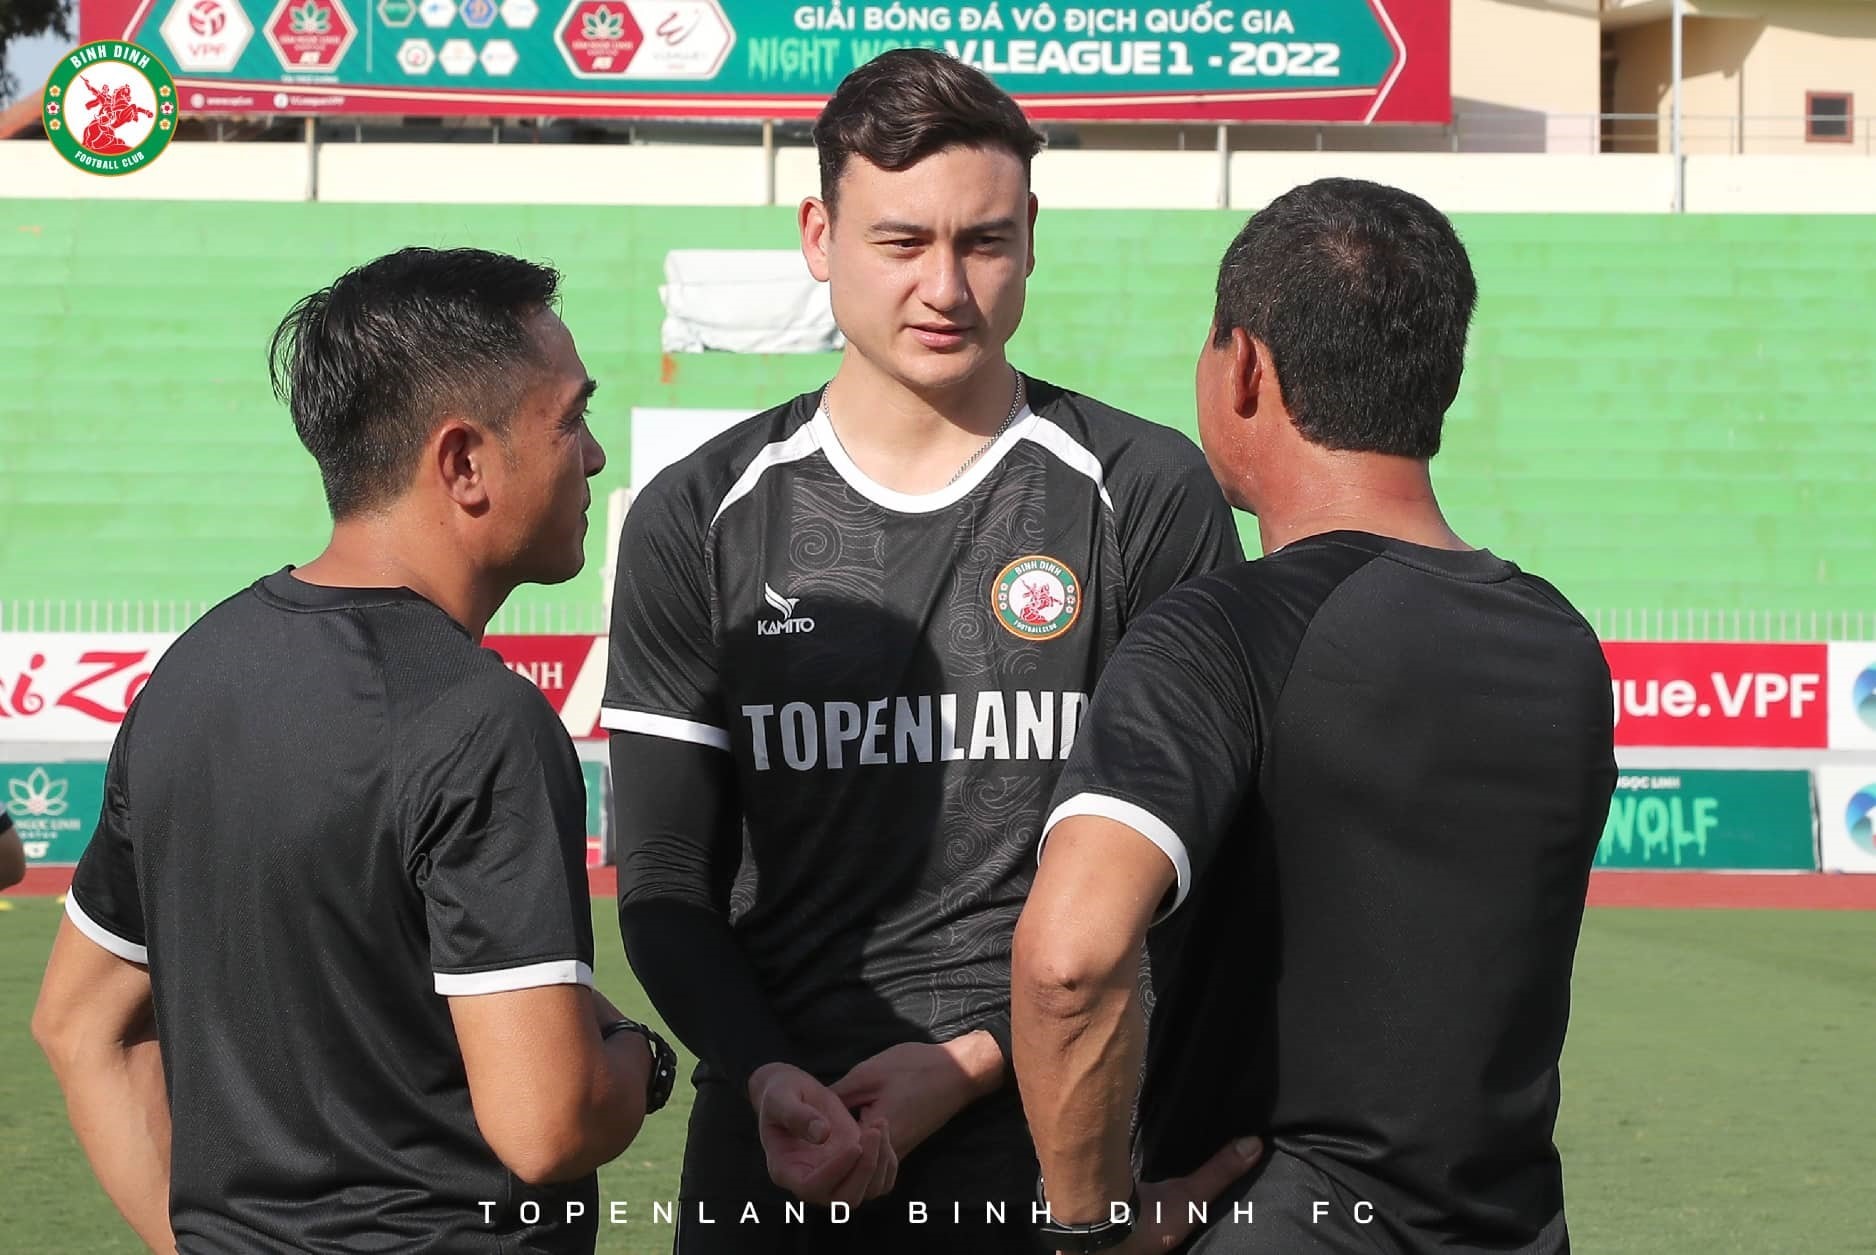 Thủ môn Đăng Văn Lâm là bản hợp đồng chất lượng của câu lạc bộ Bình Định ở mùa giải 2022. Ảnh: BĐFC